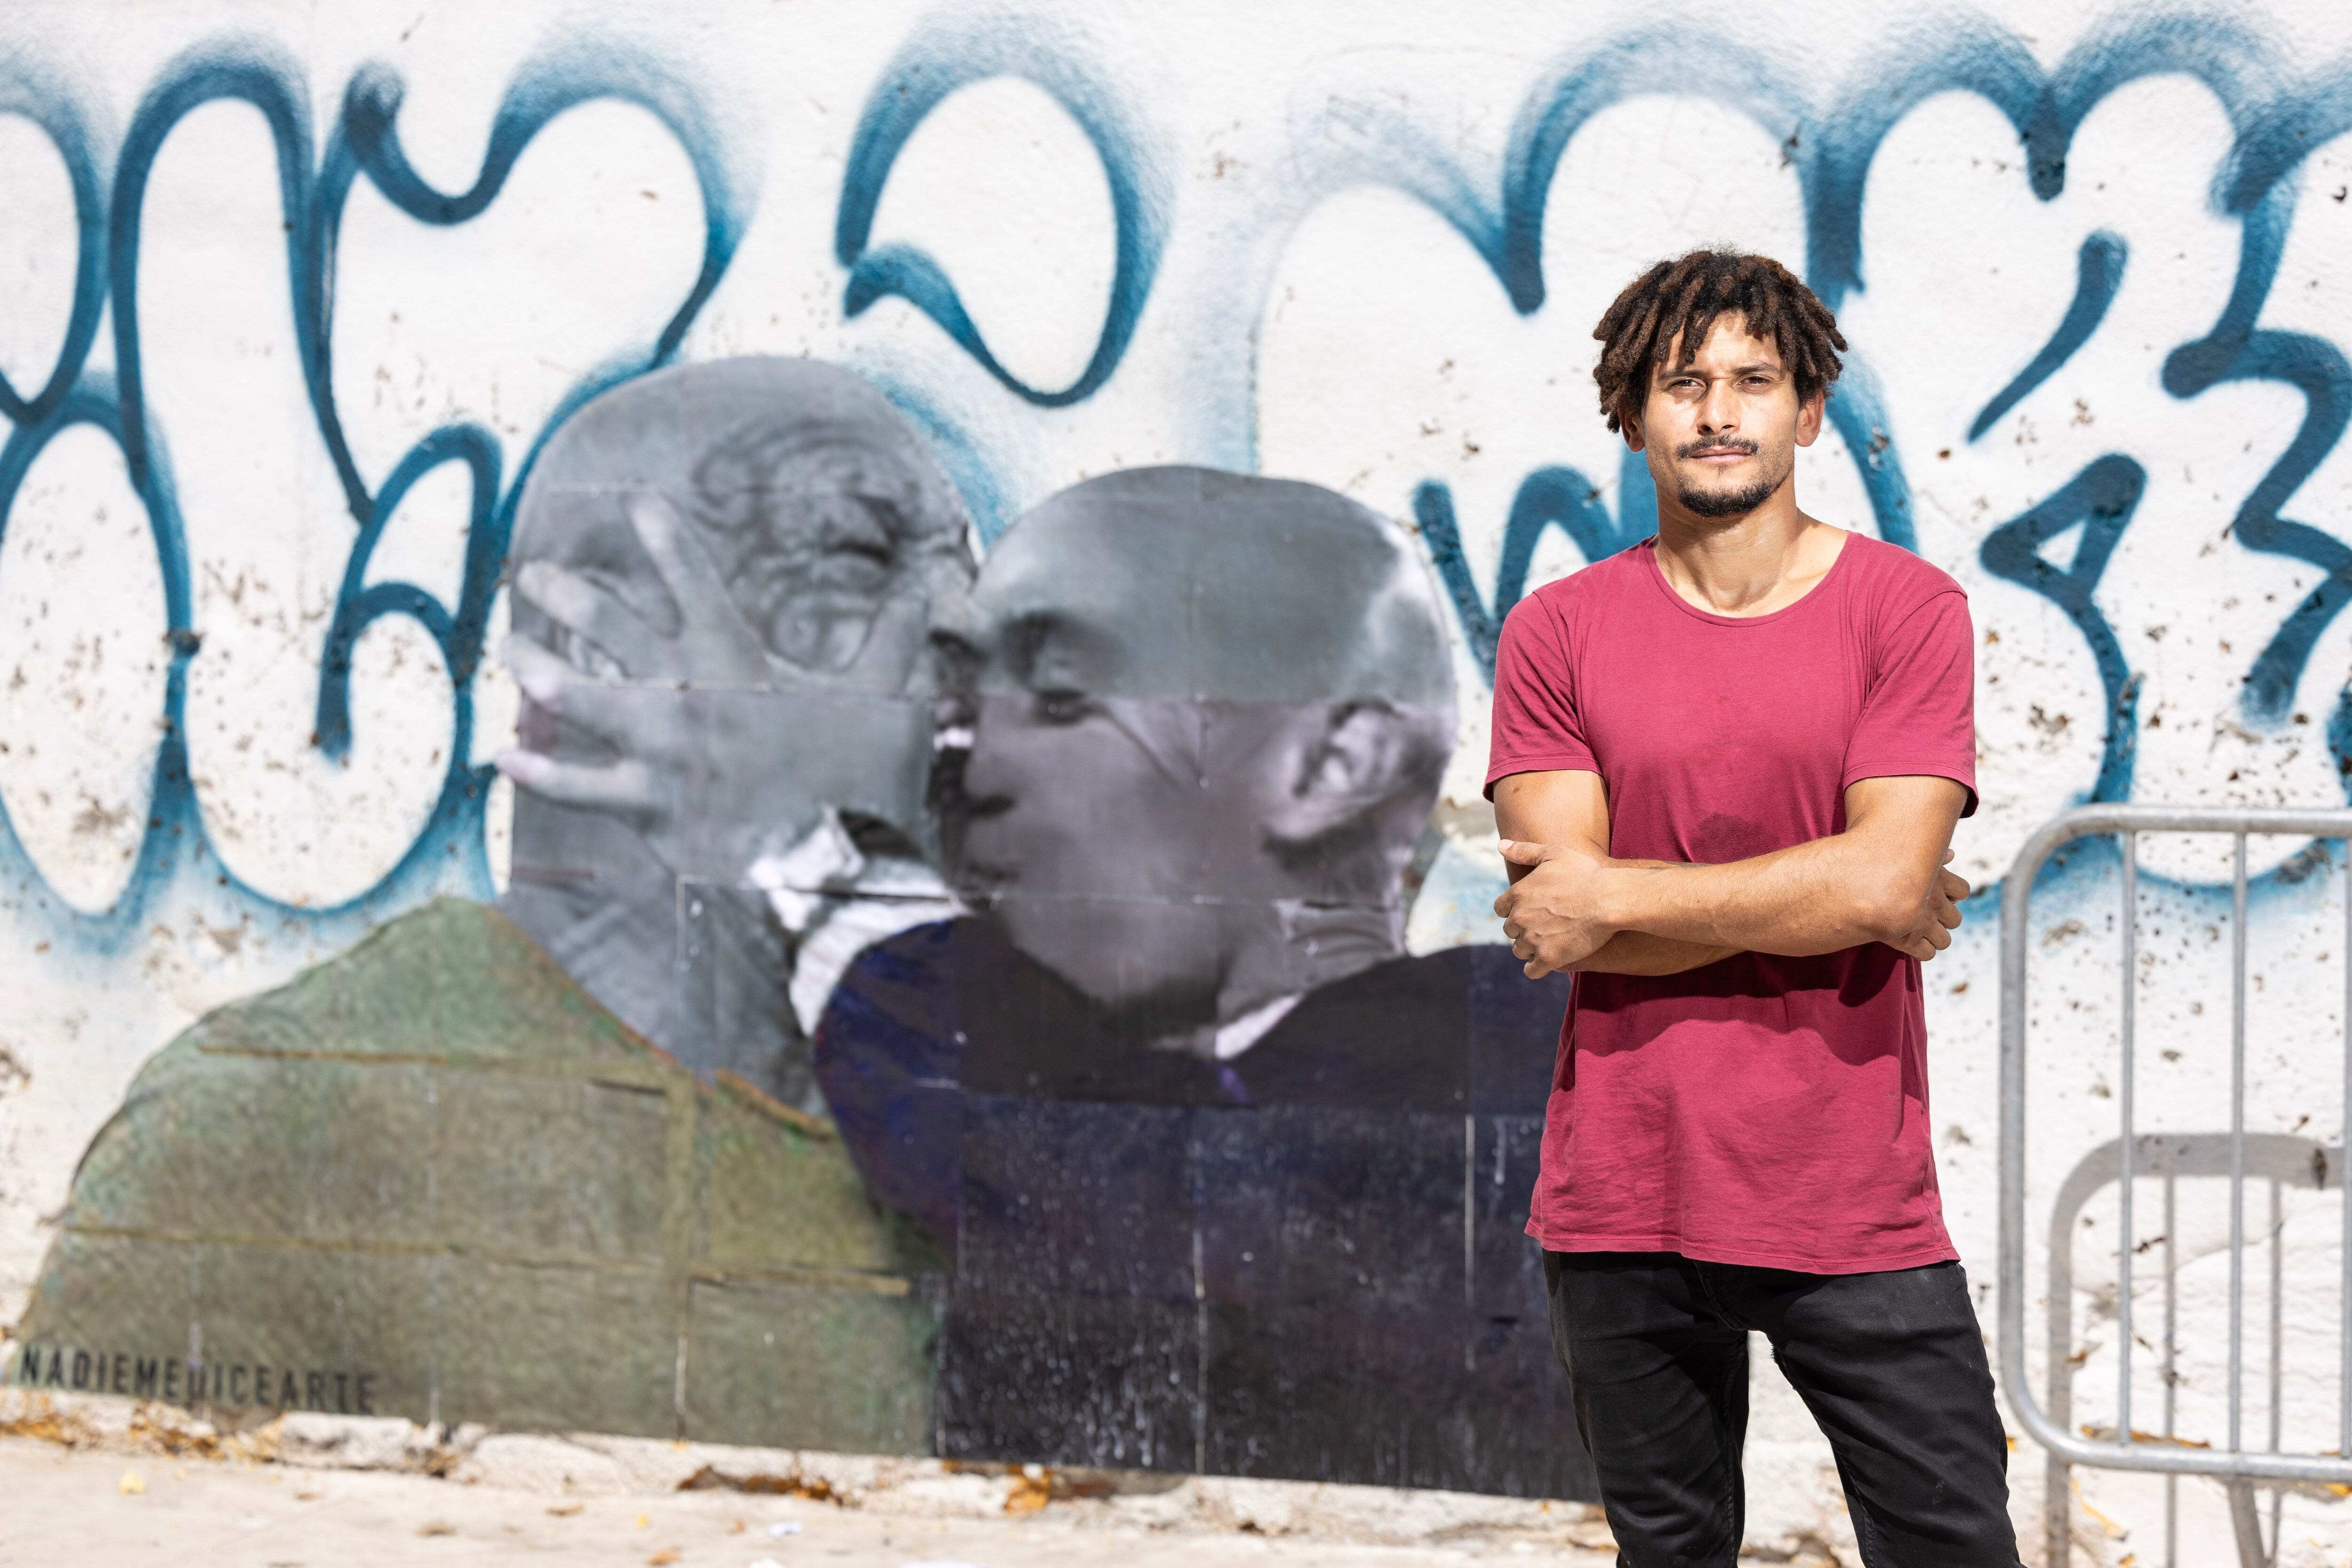 En la imagen el artista brasileño Nadiemedicearte, junto a su ultimo mural sobre Luis Rubiales y el beso a Jennifer Hermoso, con una imagen celebre de Michael Tyson, en el barrio de Sants. Foto: Massimiliano Minocri 